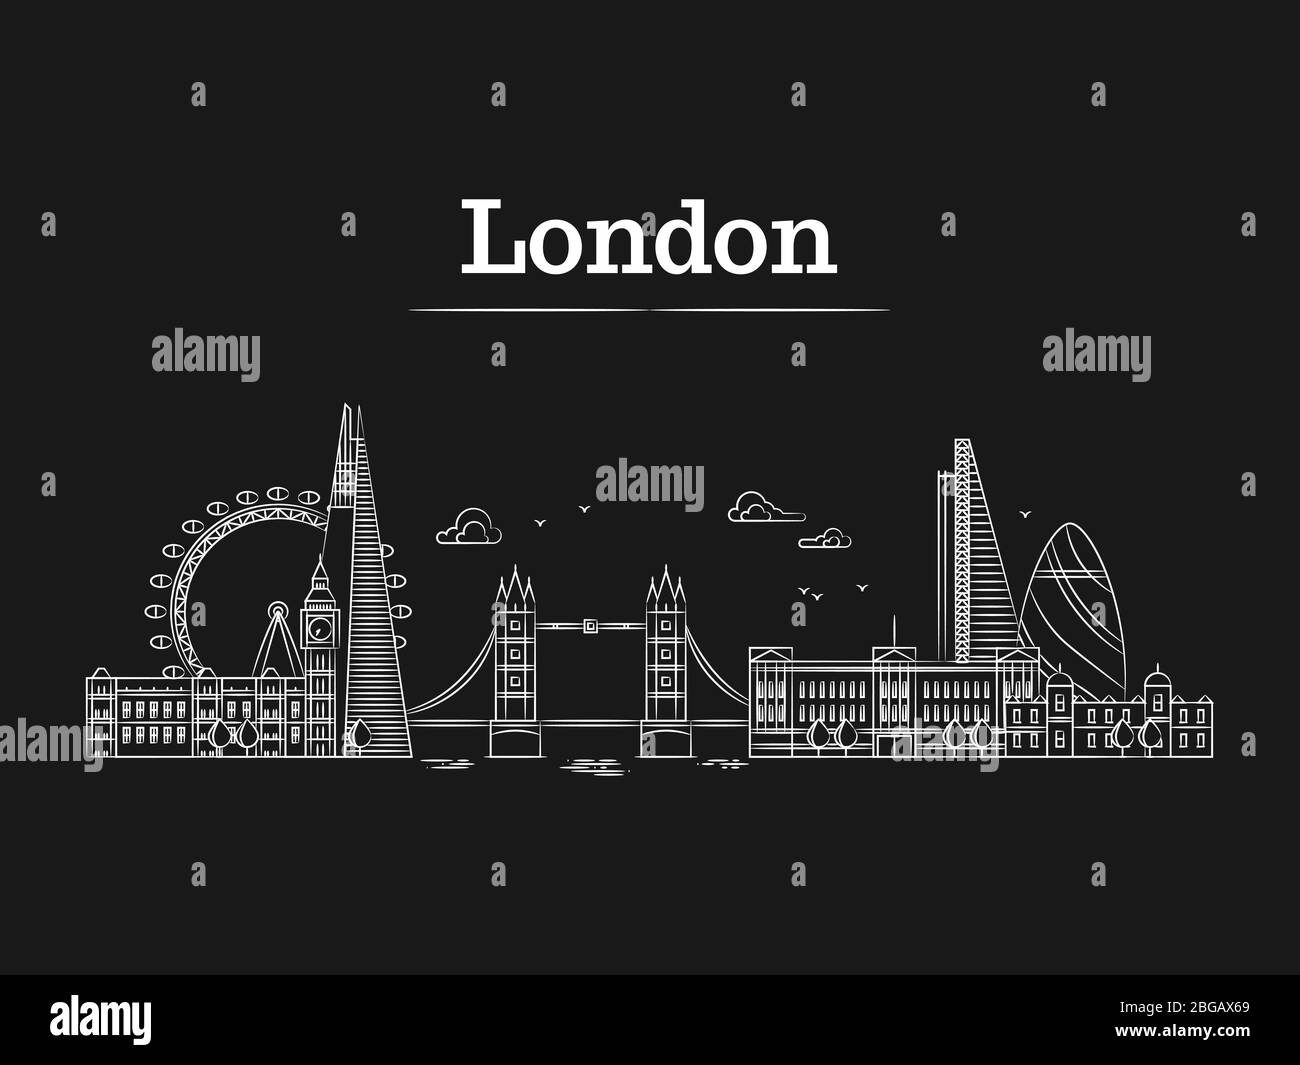 Weiße lineare Londoner Skyline mit berühmten Gebäuden, Tourismus-england Wahrzeichen auf schwarzem Untergrund. Vektorgrafik Stock Vektor